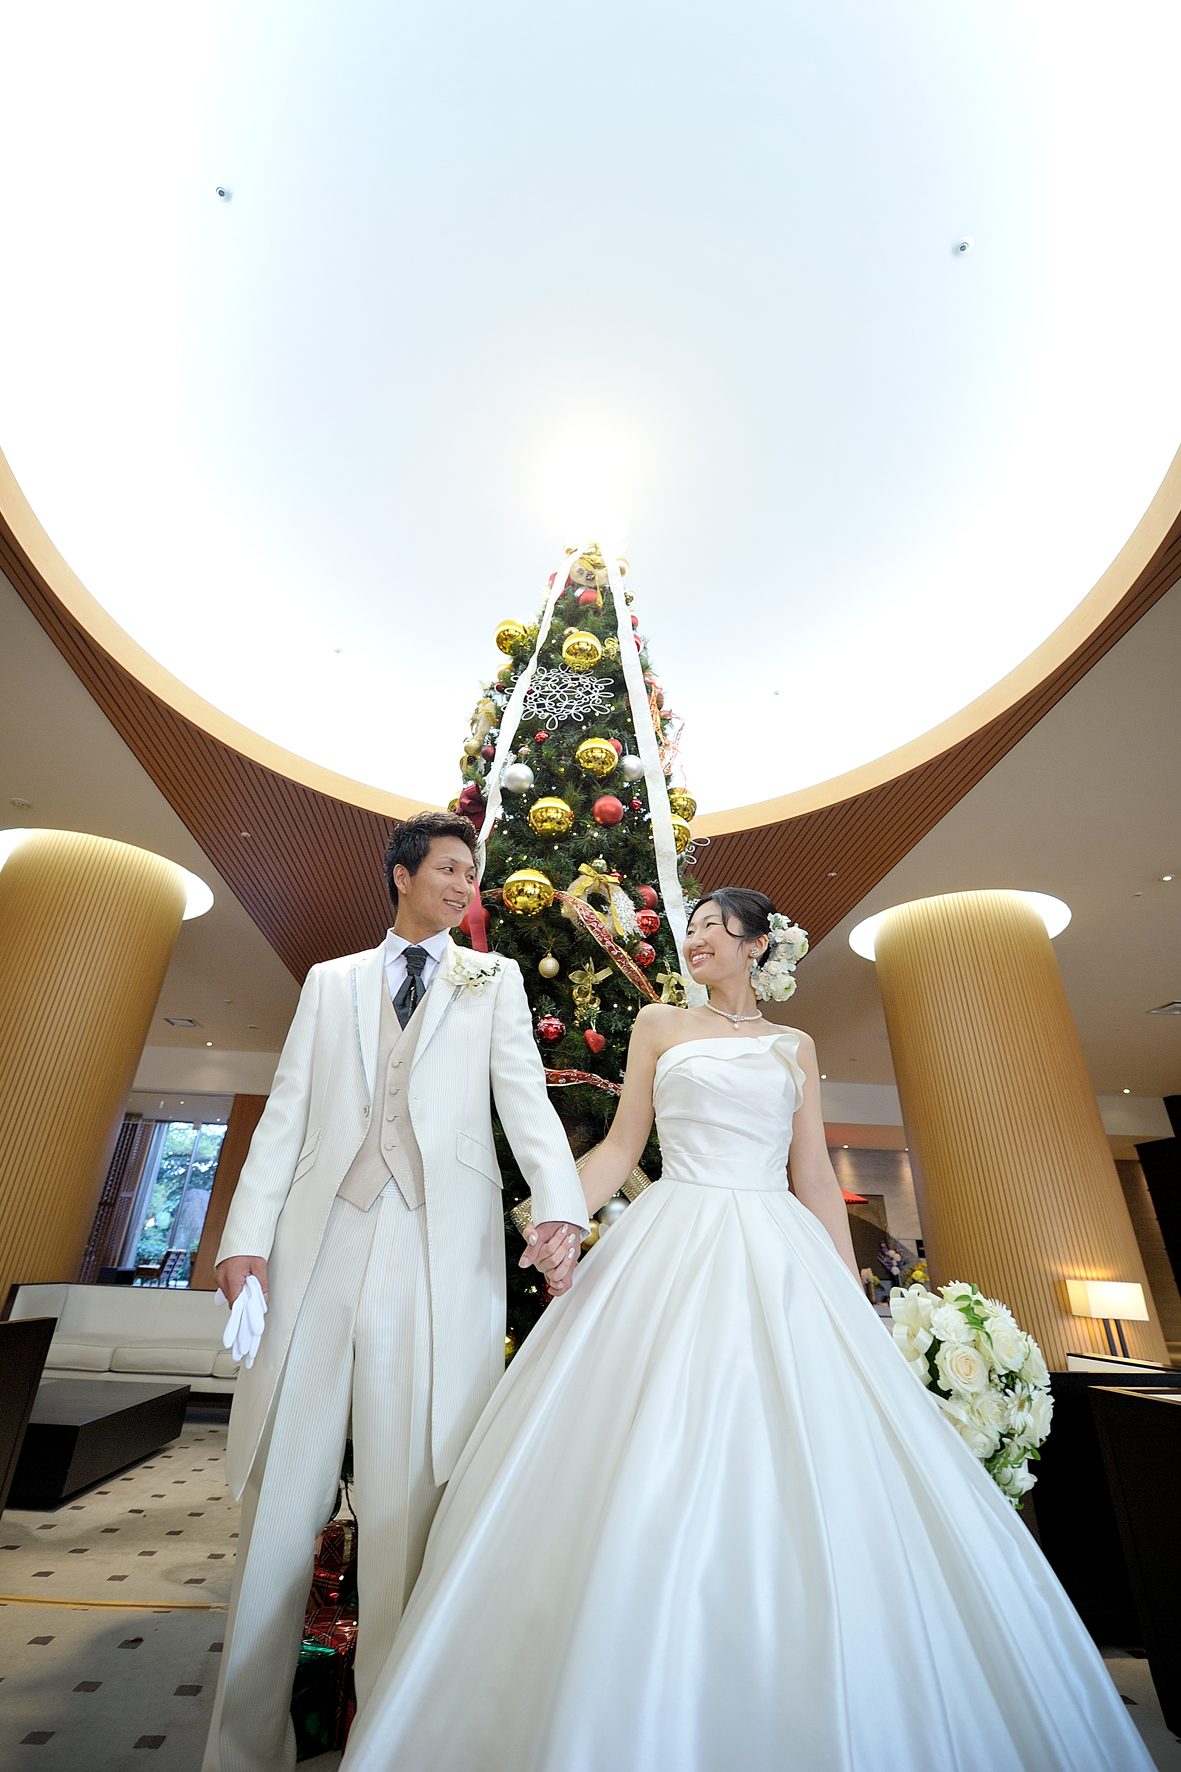 楽しんでいただきたいから、誰もが参加できる演出をセレクト 熊本の結婚式 菊南温泉ユウベルホテル